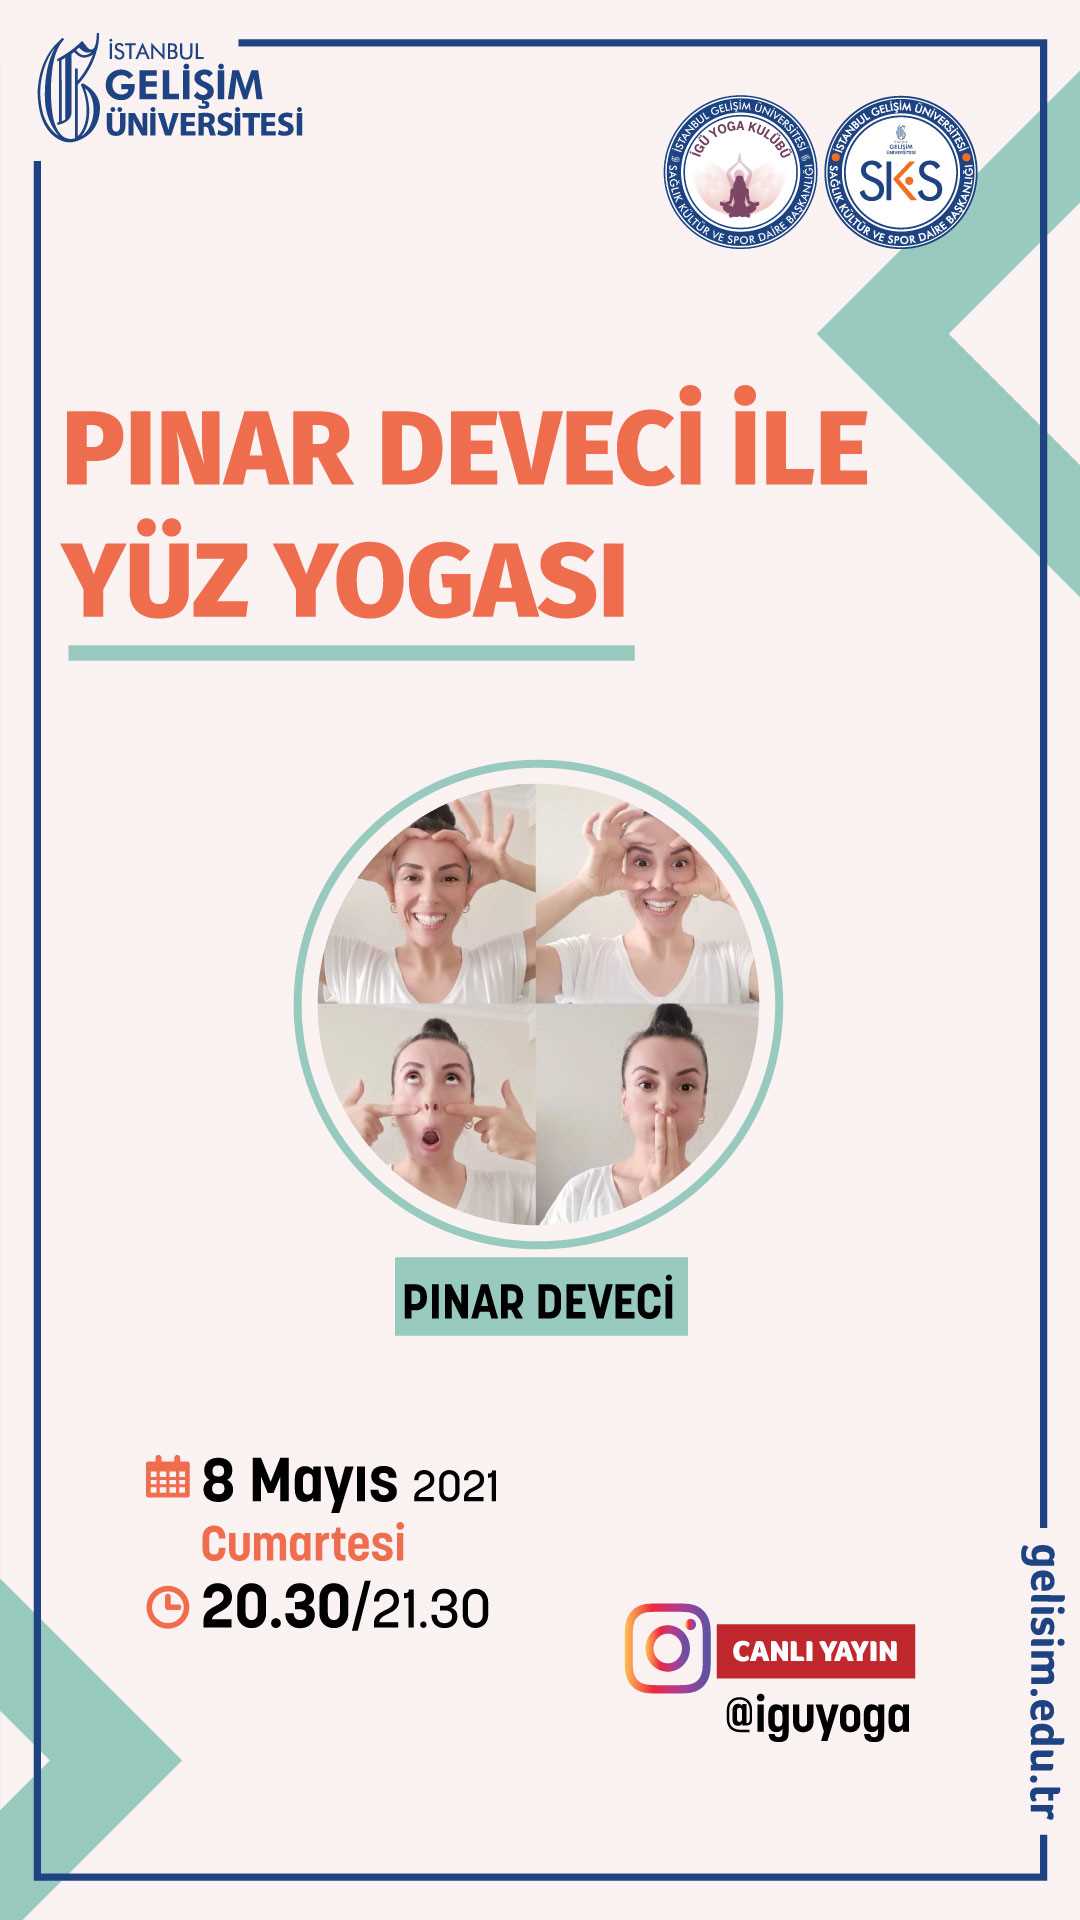 Pınar Deveci ile Yüz Yogası